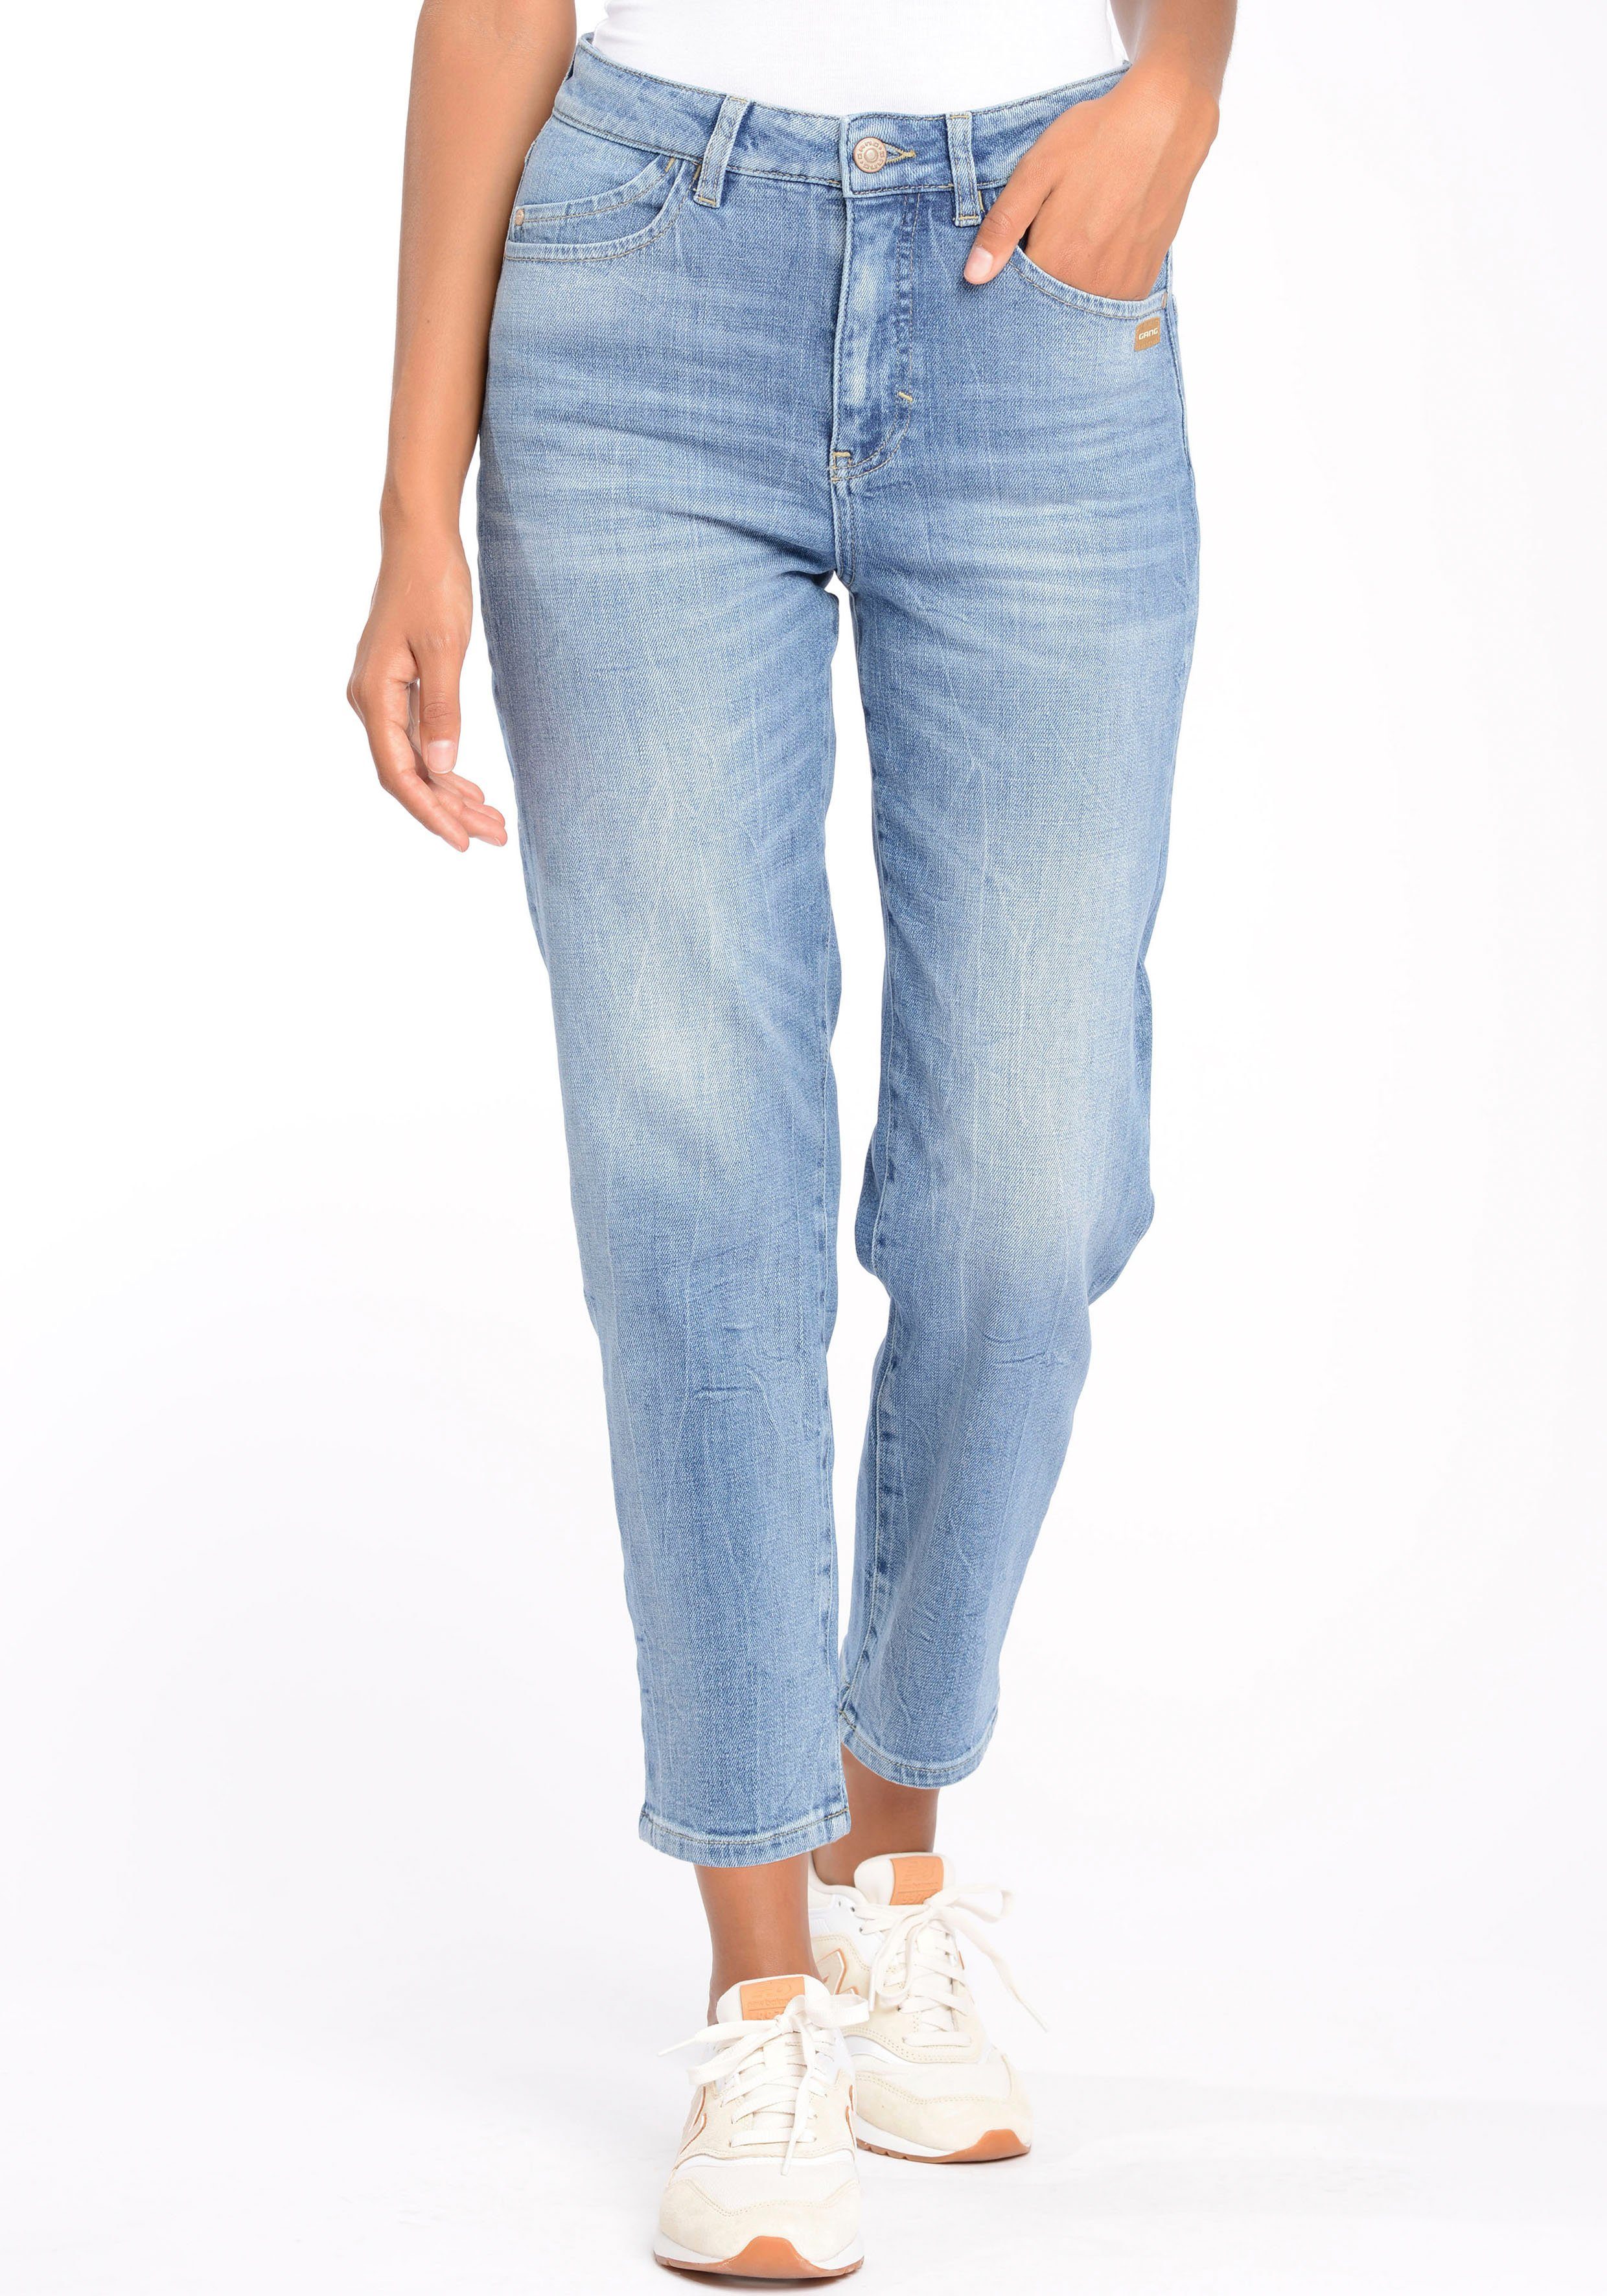 Jeans online kaufen » Jeanshosen | OTTO